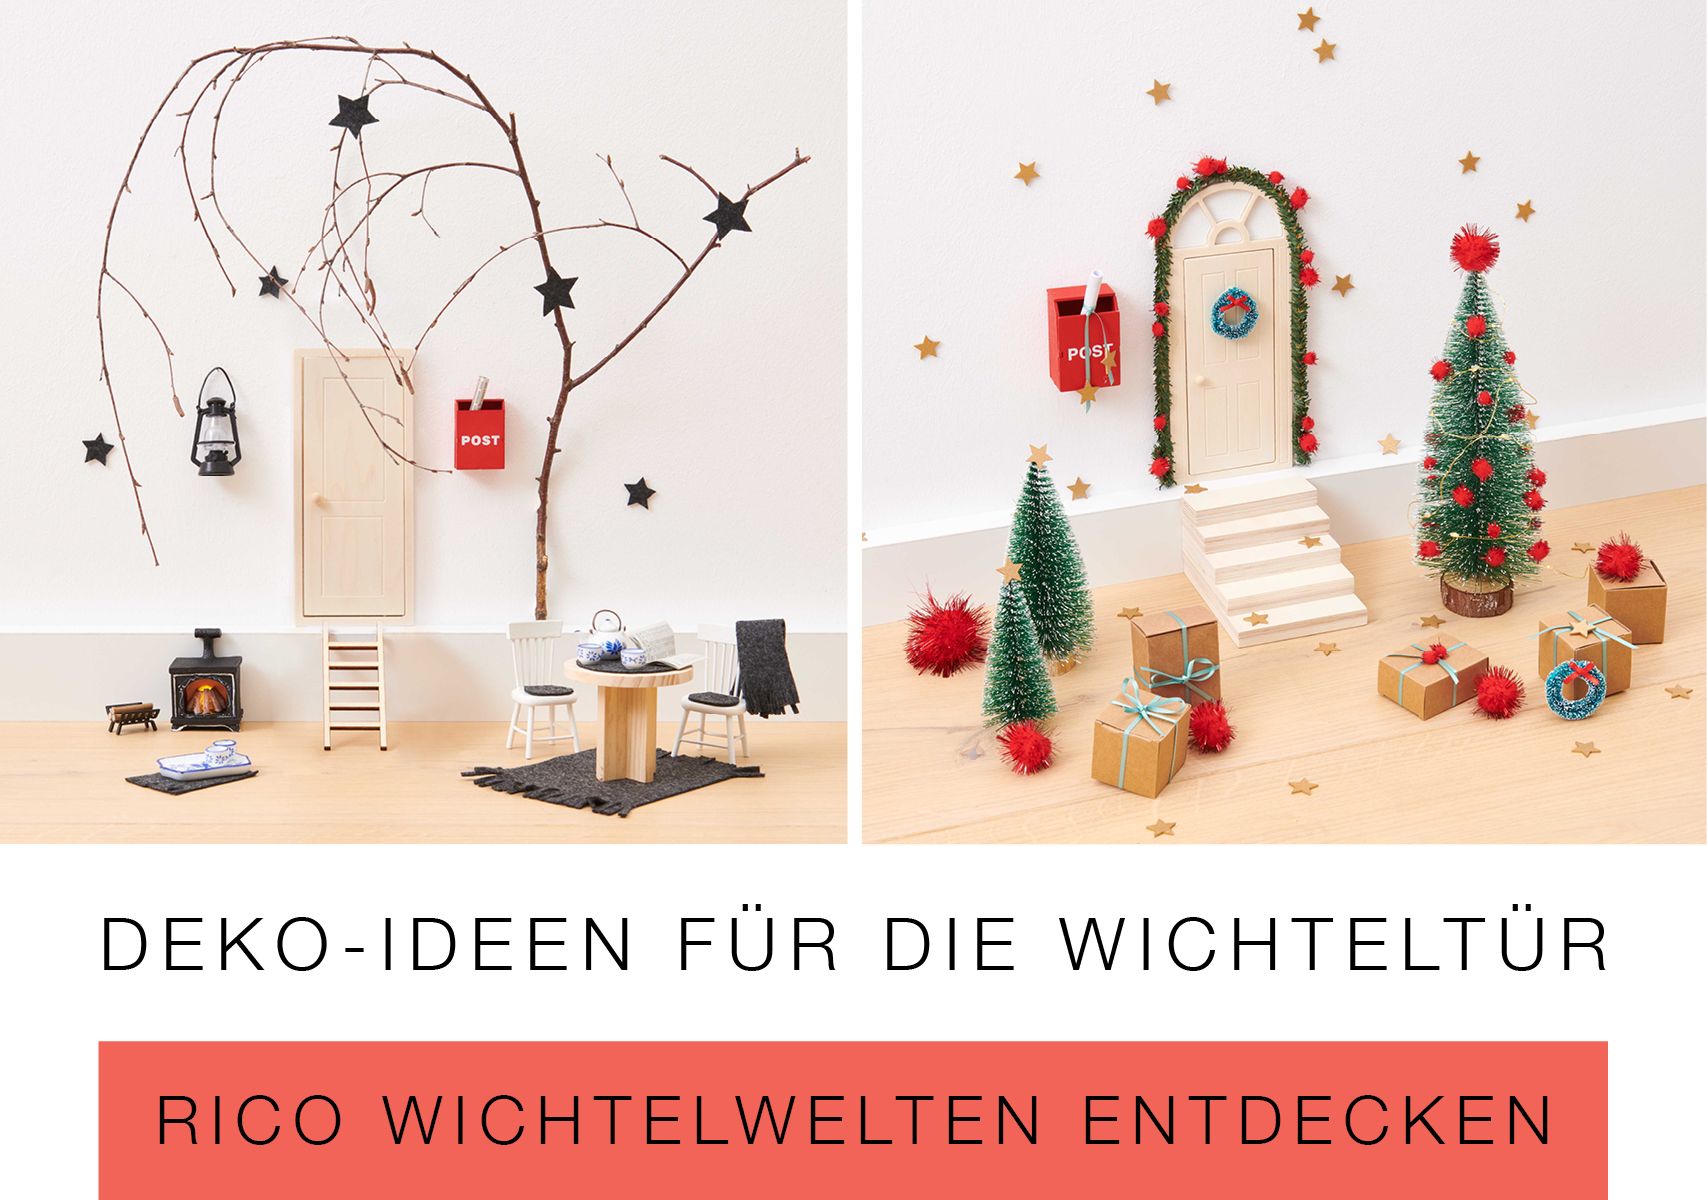 https://www.rico-design.com/anlaesse/weihnachten/wichtel-welt/